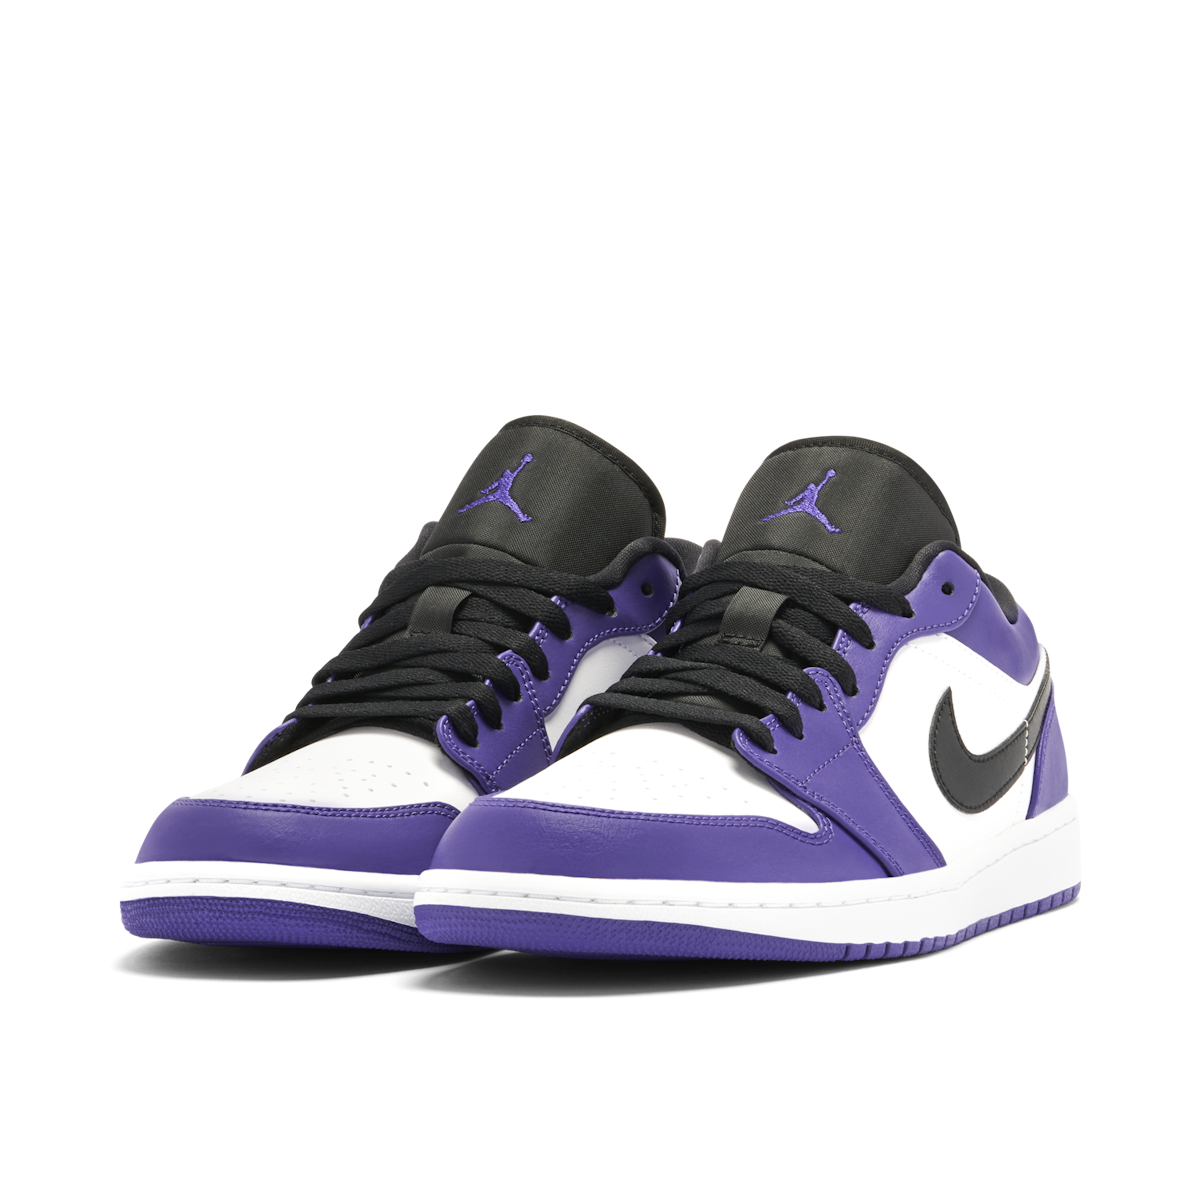 Jordan Mens Air 1 Low Court Purple - Court Purple/Black-White 553558 500 -  Size 8